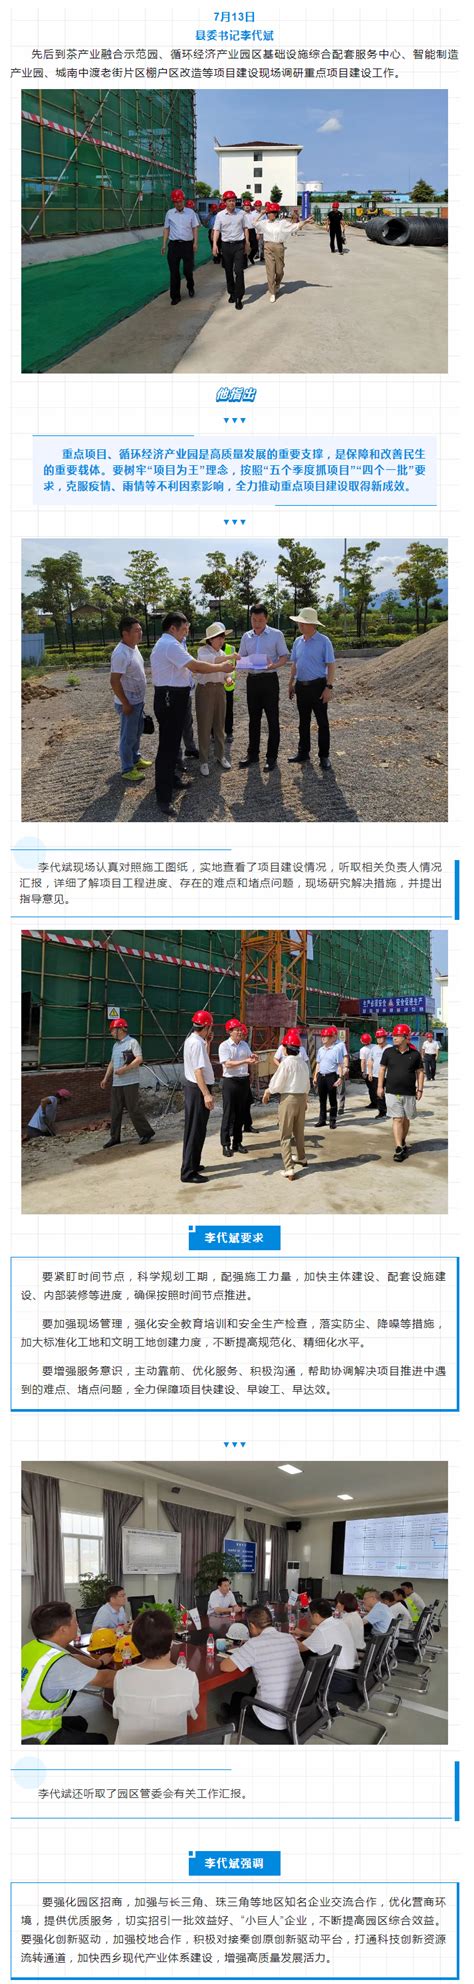 县委书记李代斌调研重点项目建设 - 西乡县人民政府